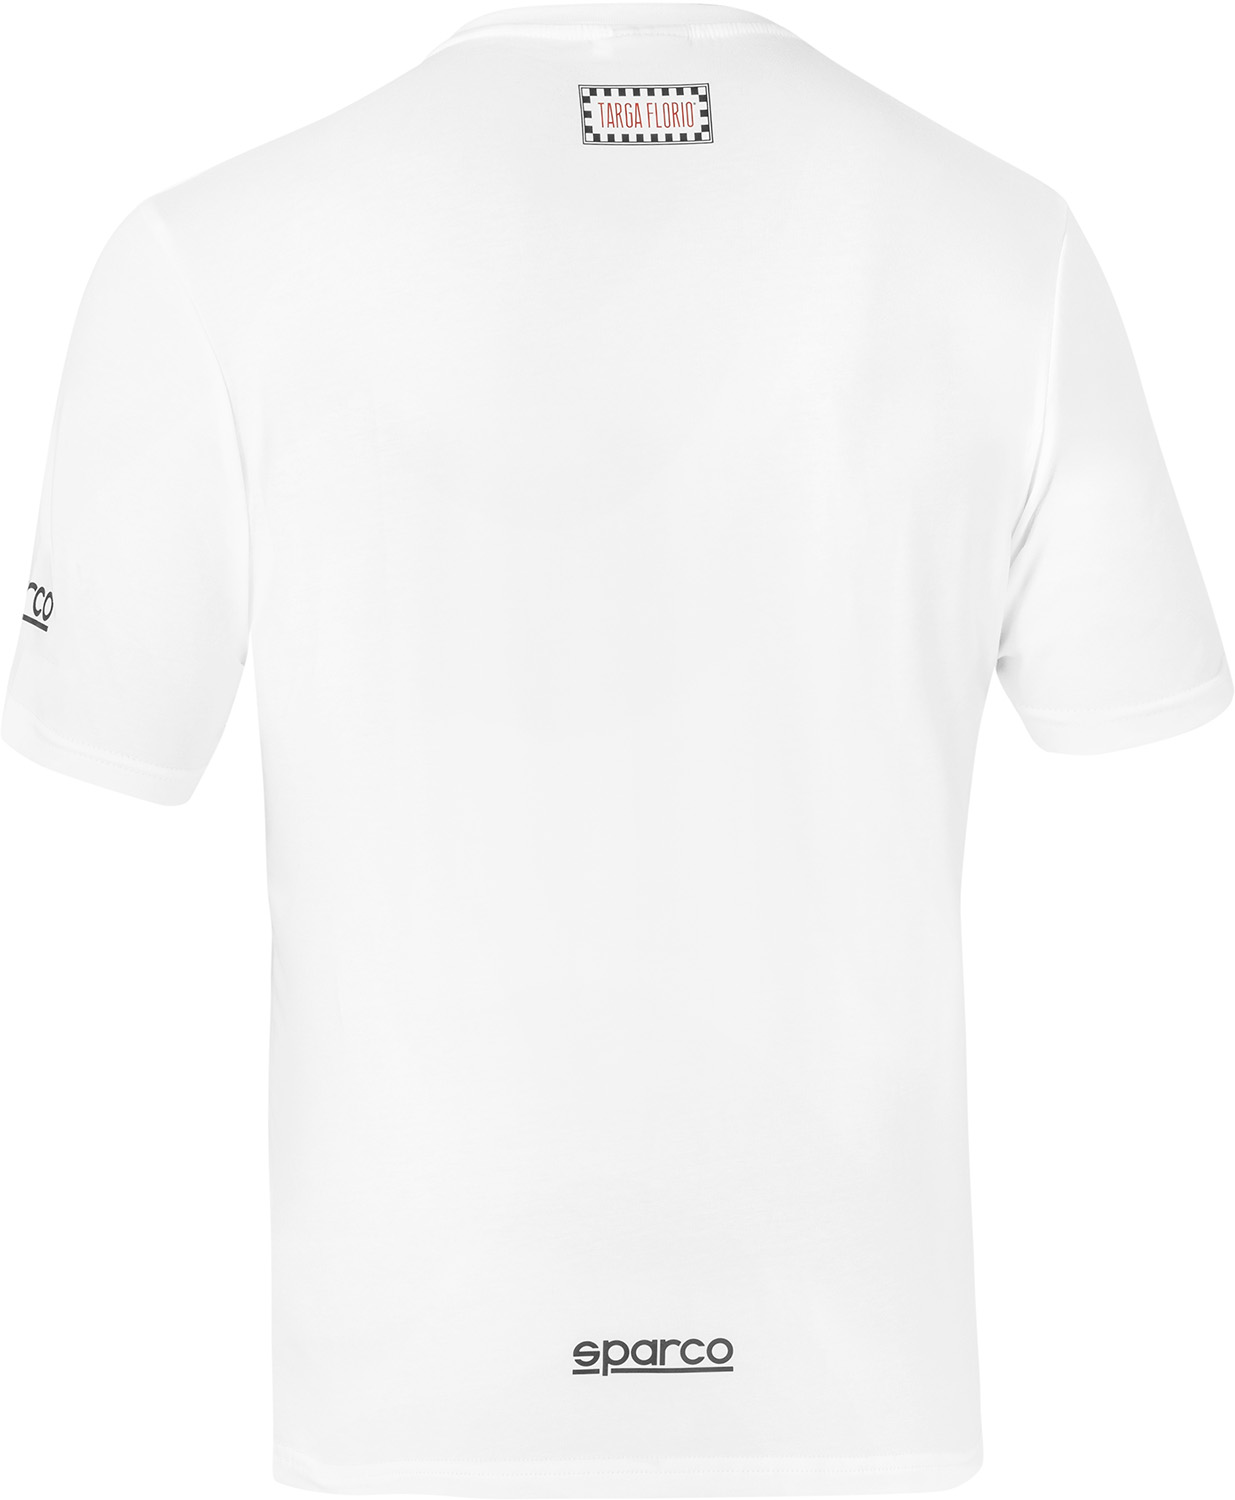 T-Shirt Targa Florio